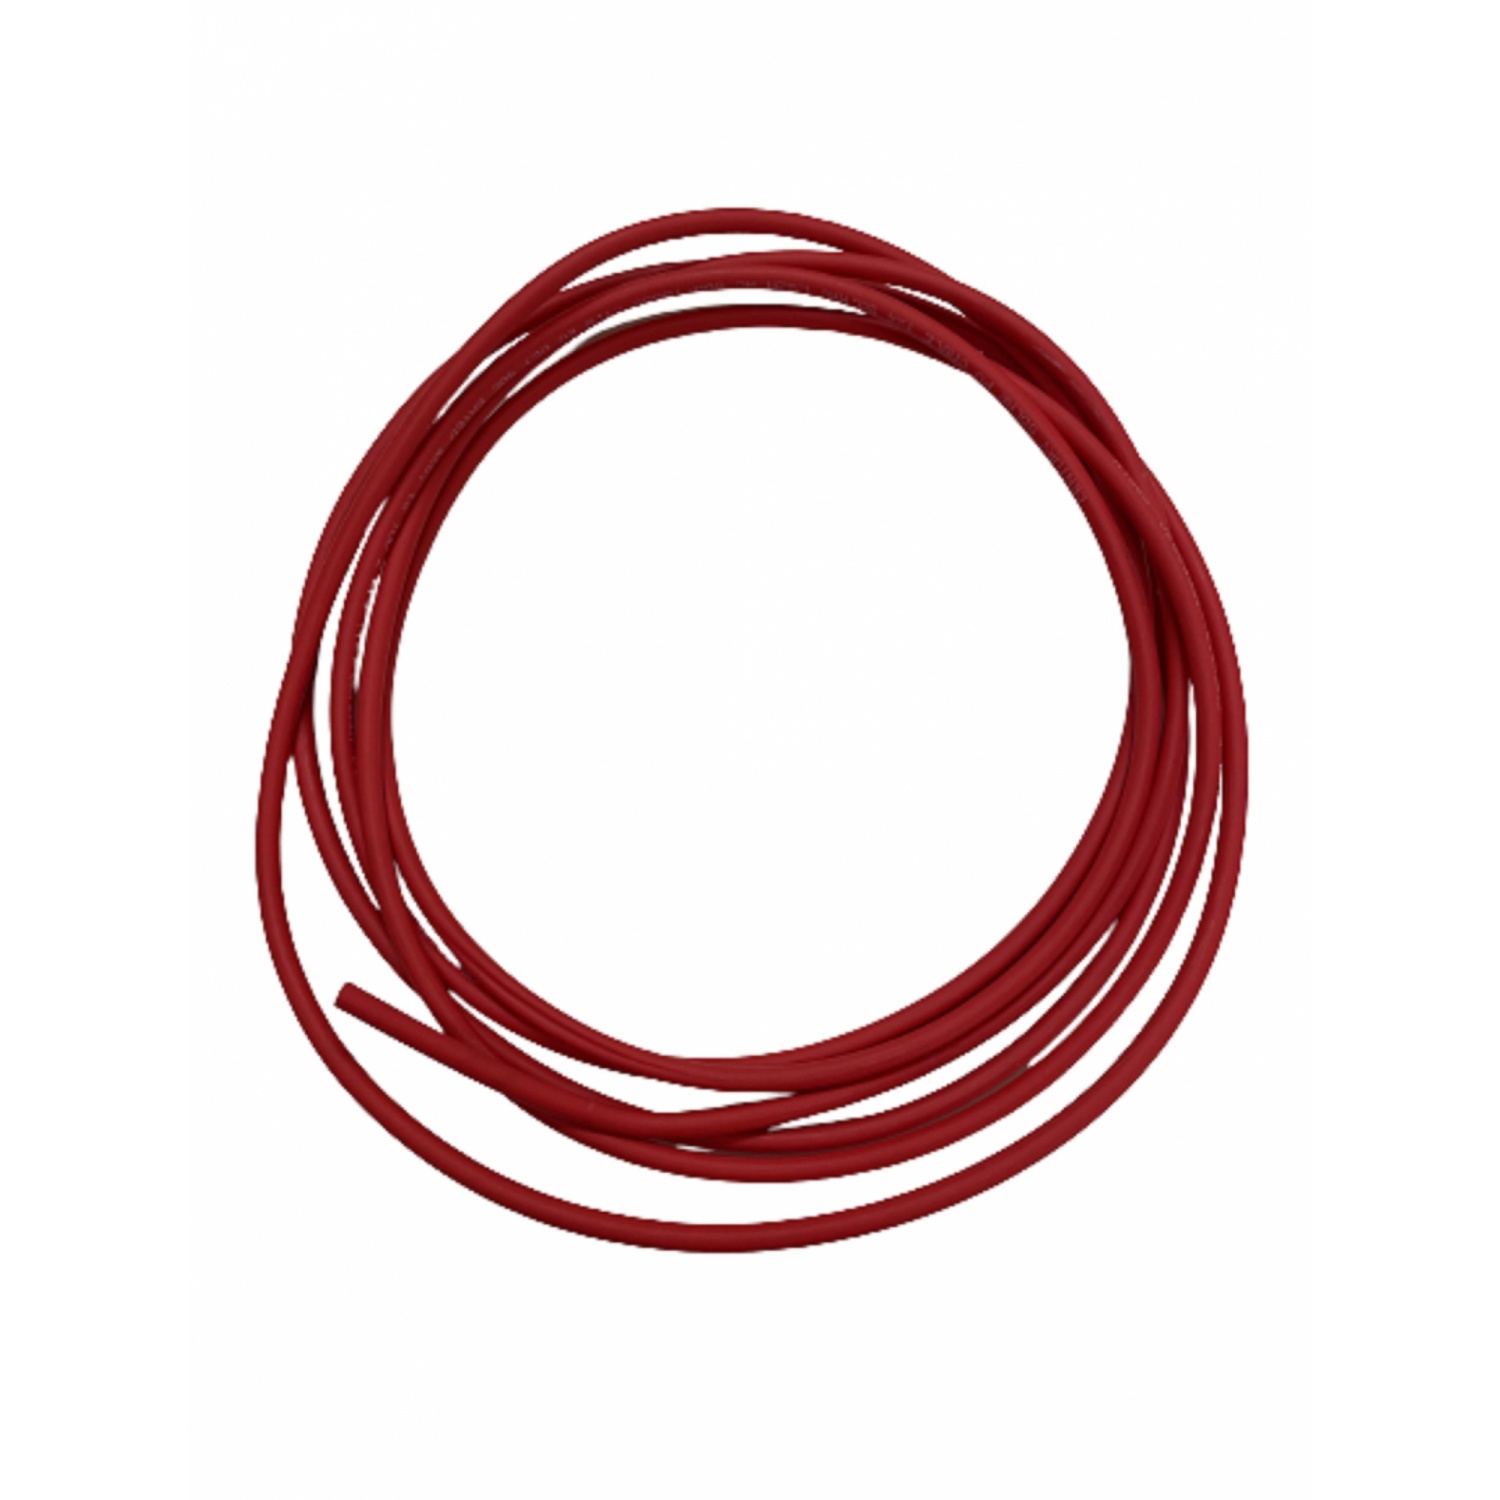 Century สายไฟโซลาร์เซลล์ PV1-F 1x4 SQ.MM. 10 M RED 1000VAC/1800VDC สีแดง